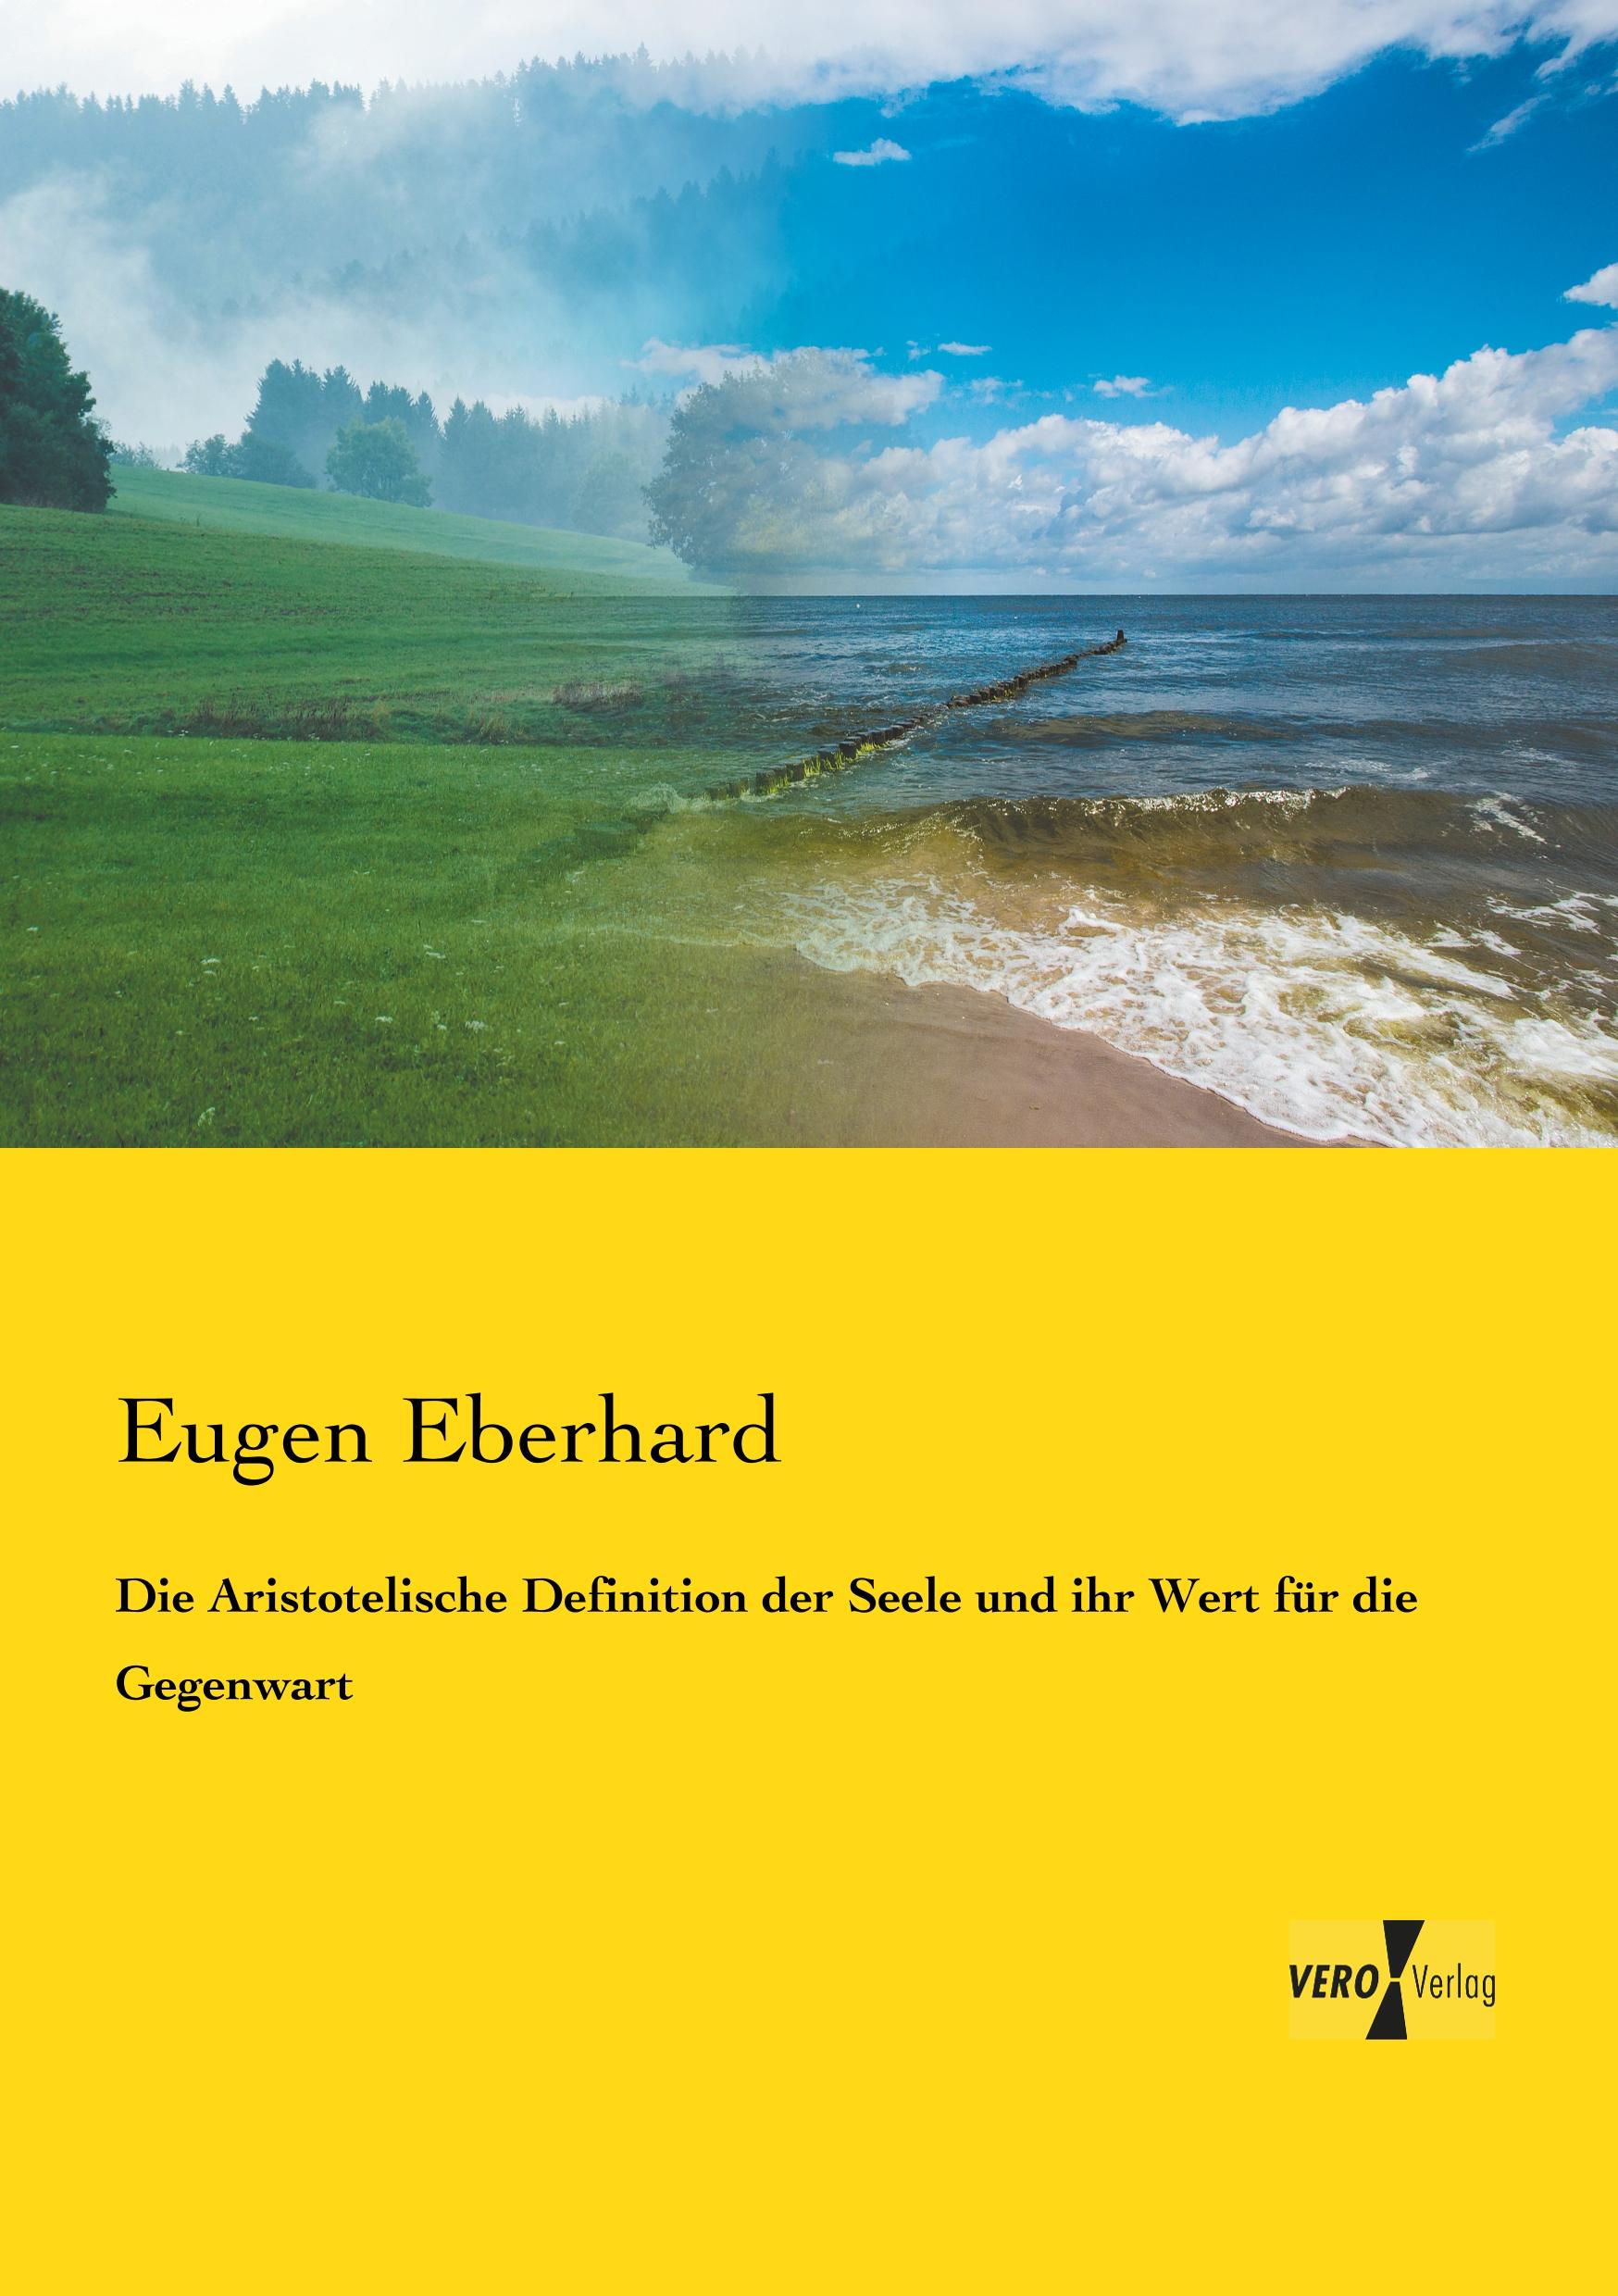 Die Aristotelische Definition der Seele und ihr Wert fuer die Gegenwart - Eberhard, Eugen